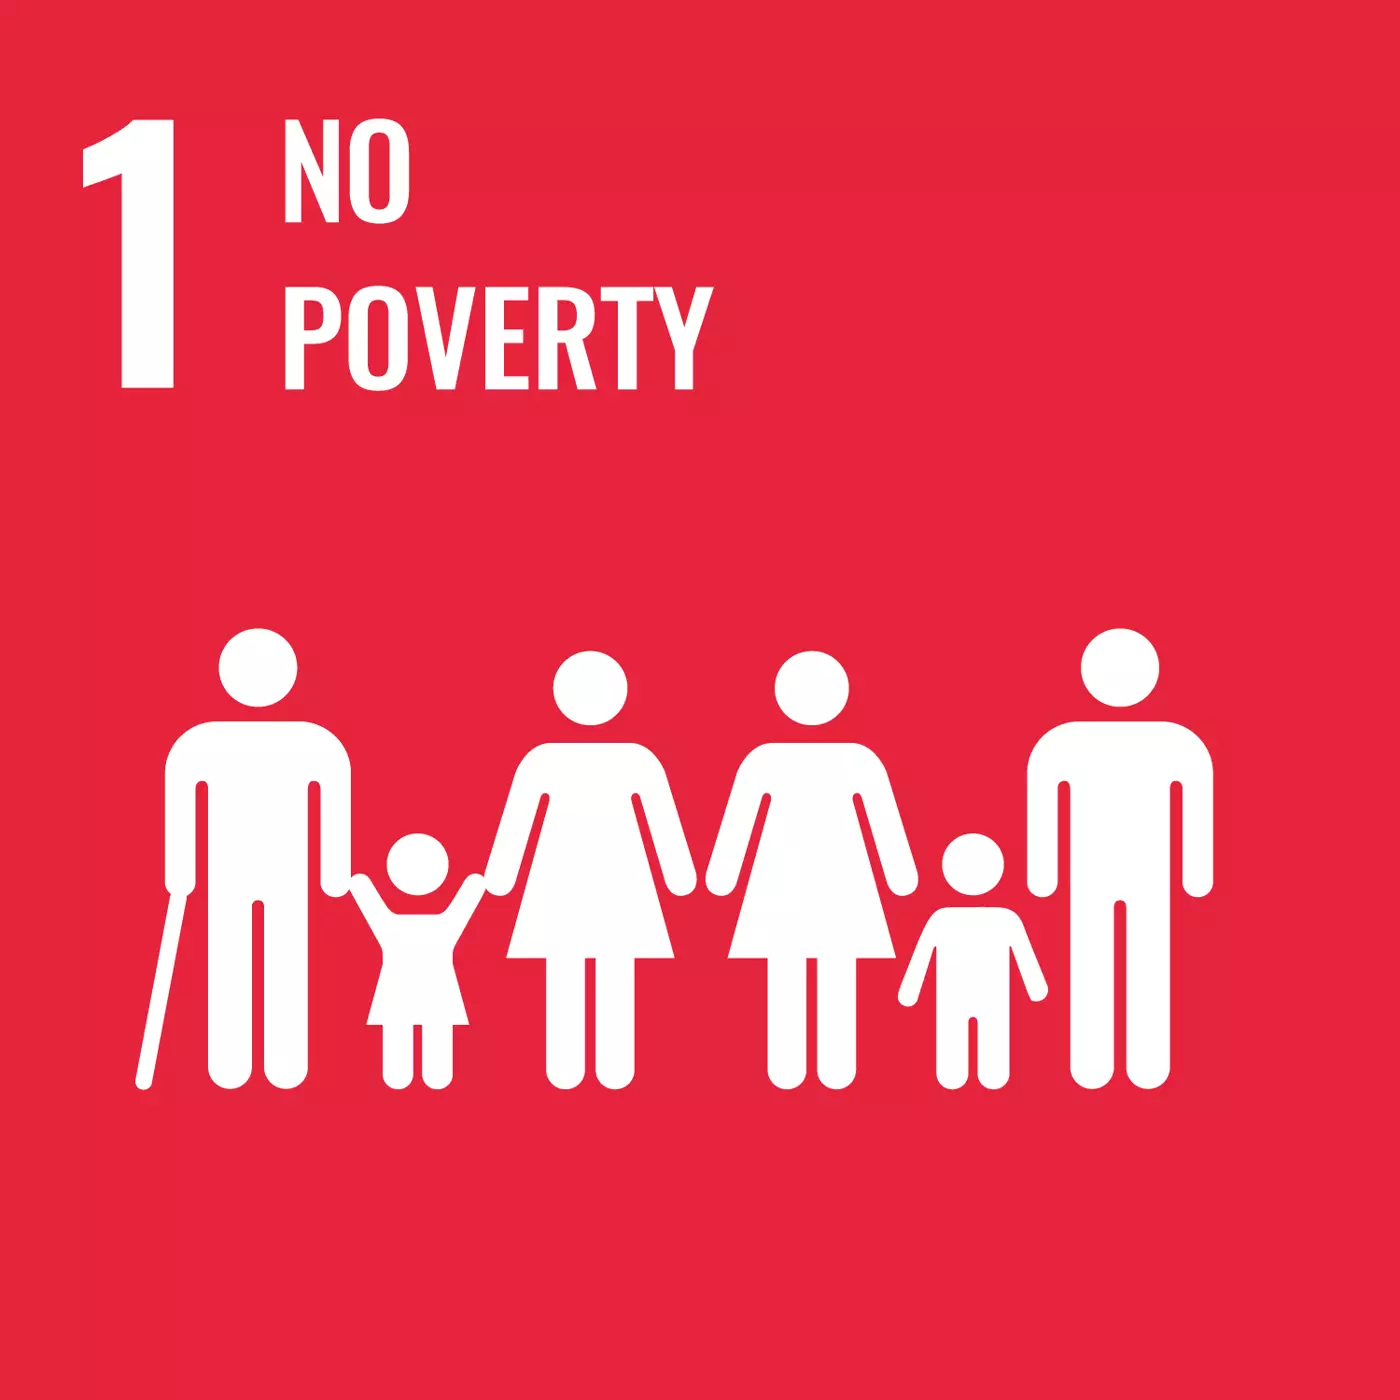 UN-SDG-1